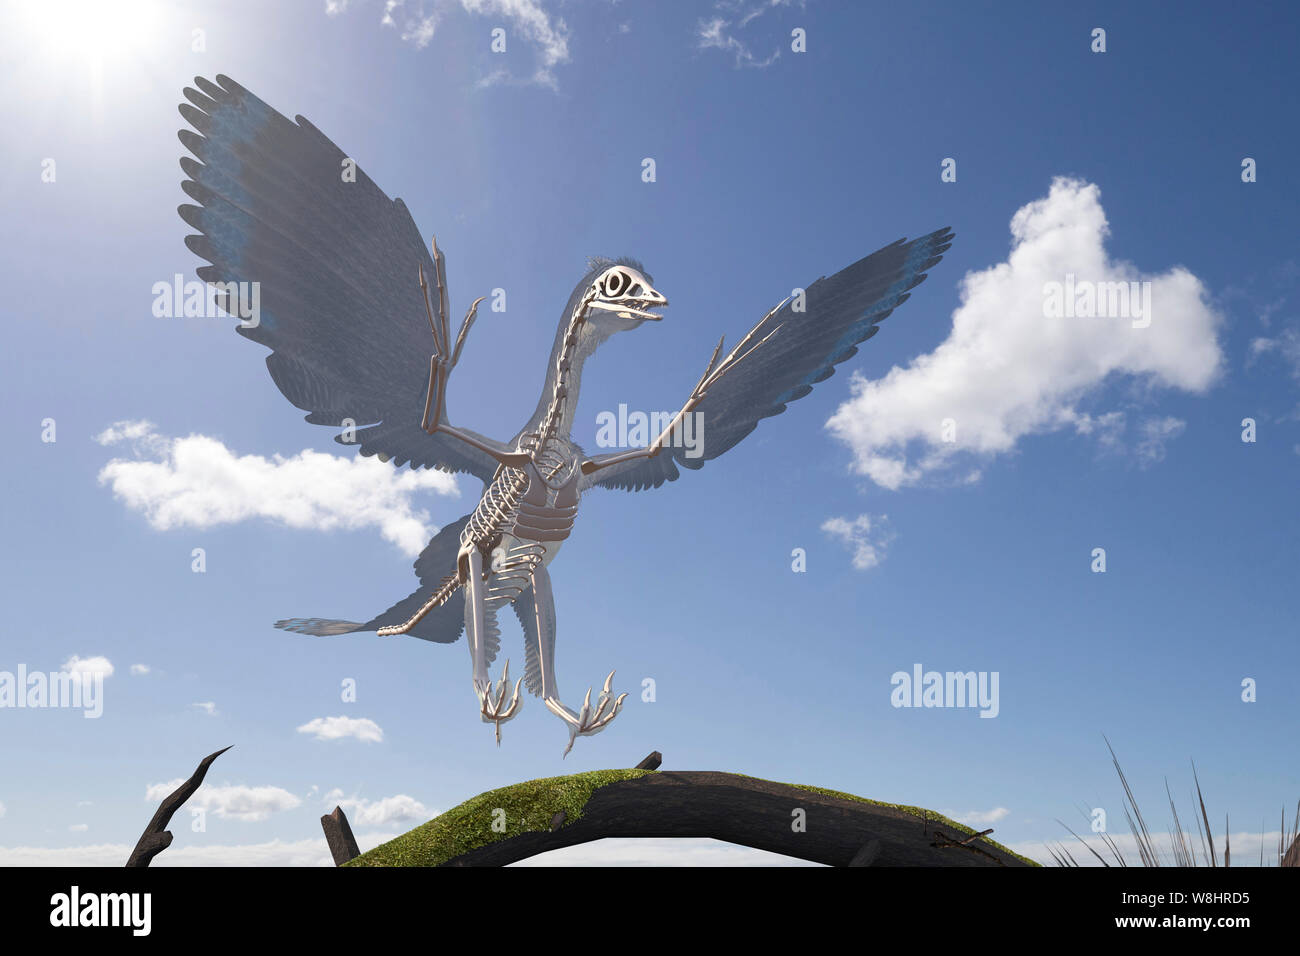 La structure du squelette de dinosaure archéoptéryx, illustration. Ces oiseaux comme les dinosaures ont vécu il y a environ 150 millions d'années durant le Jurassique tardif. Banque D'Images